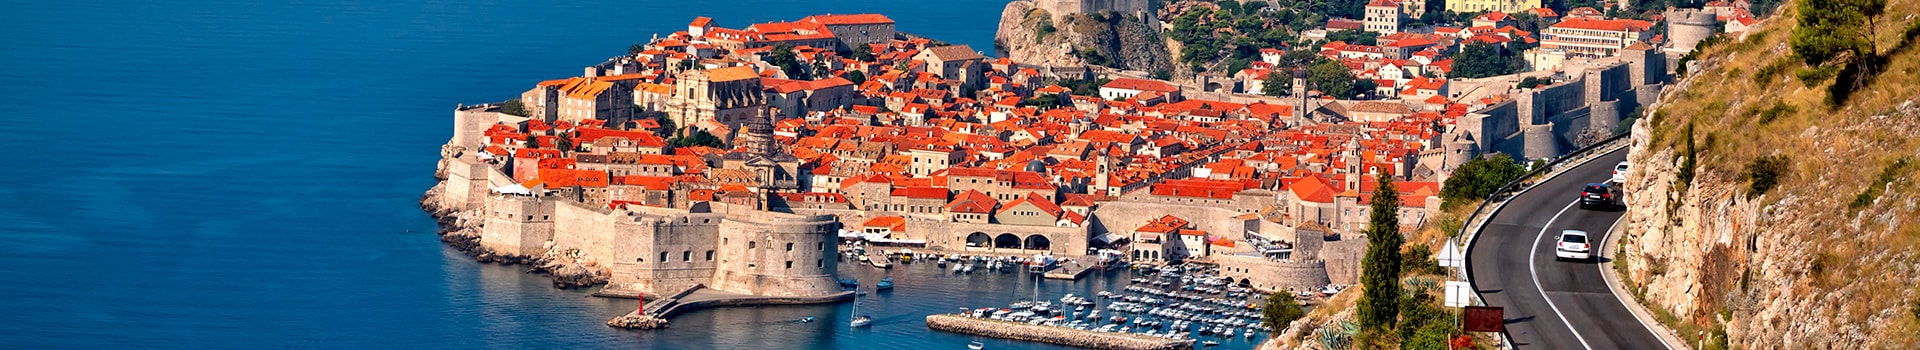 Almería - Dubrovnik